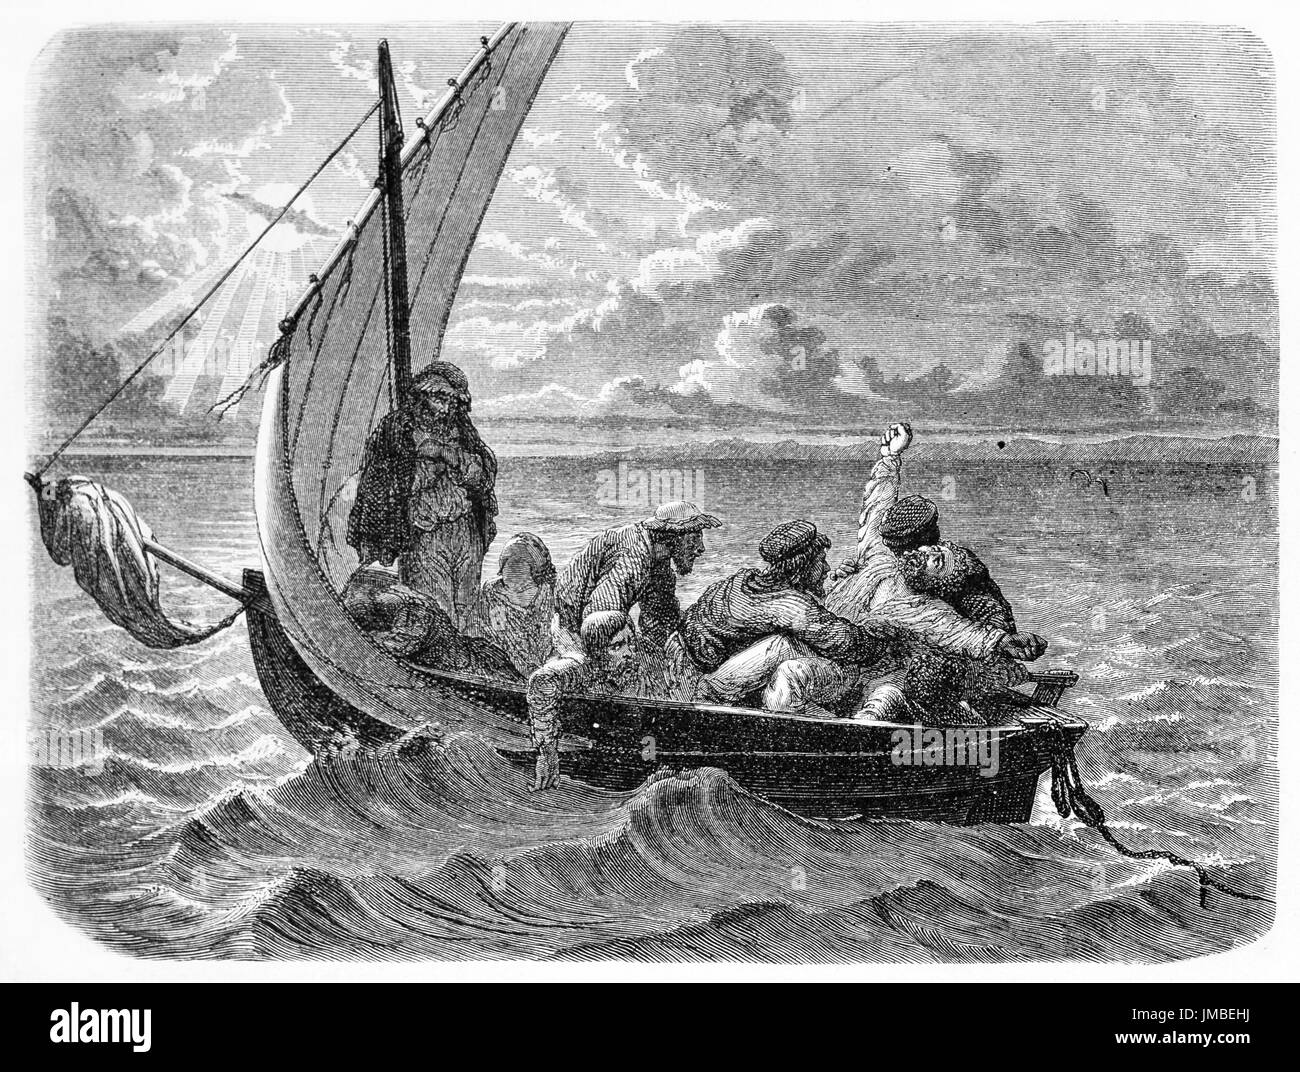 Kleines Segelschiff auf hoher See, Saint-Paul (französisch Schiff) erschöpft Schiffbruch Seeleute auf Rettungsboot. Kunst von Hadamard und Bertrand, 1861 Stockfoto